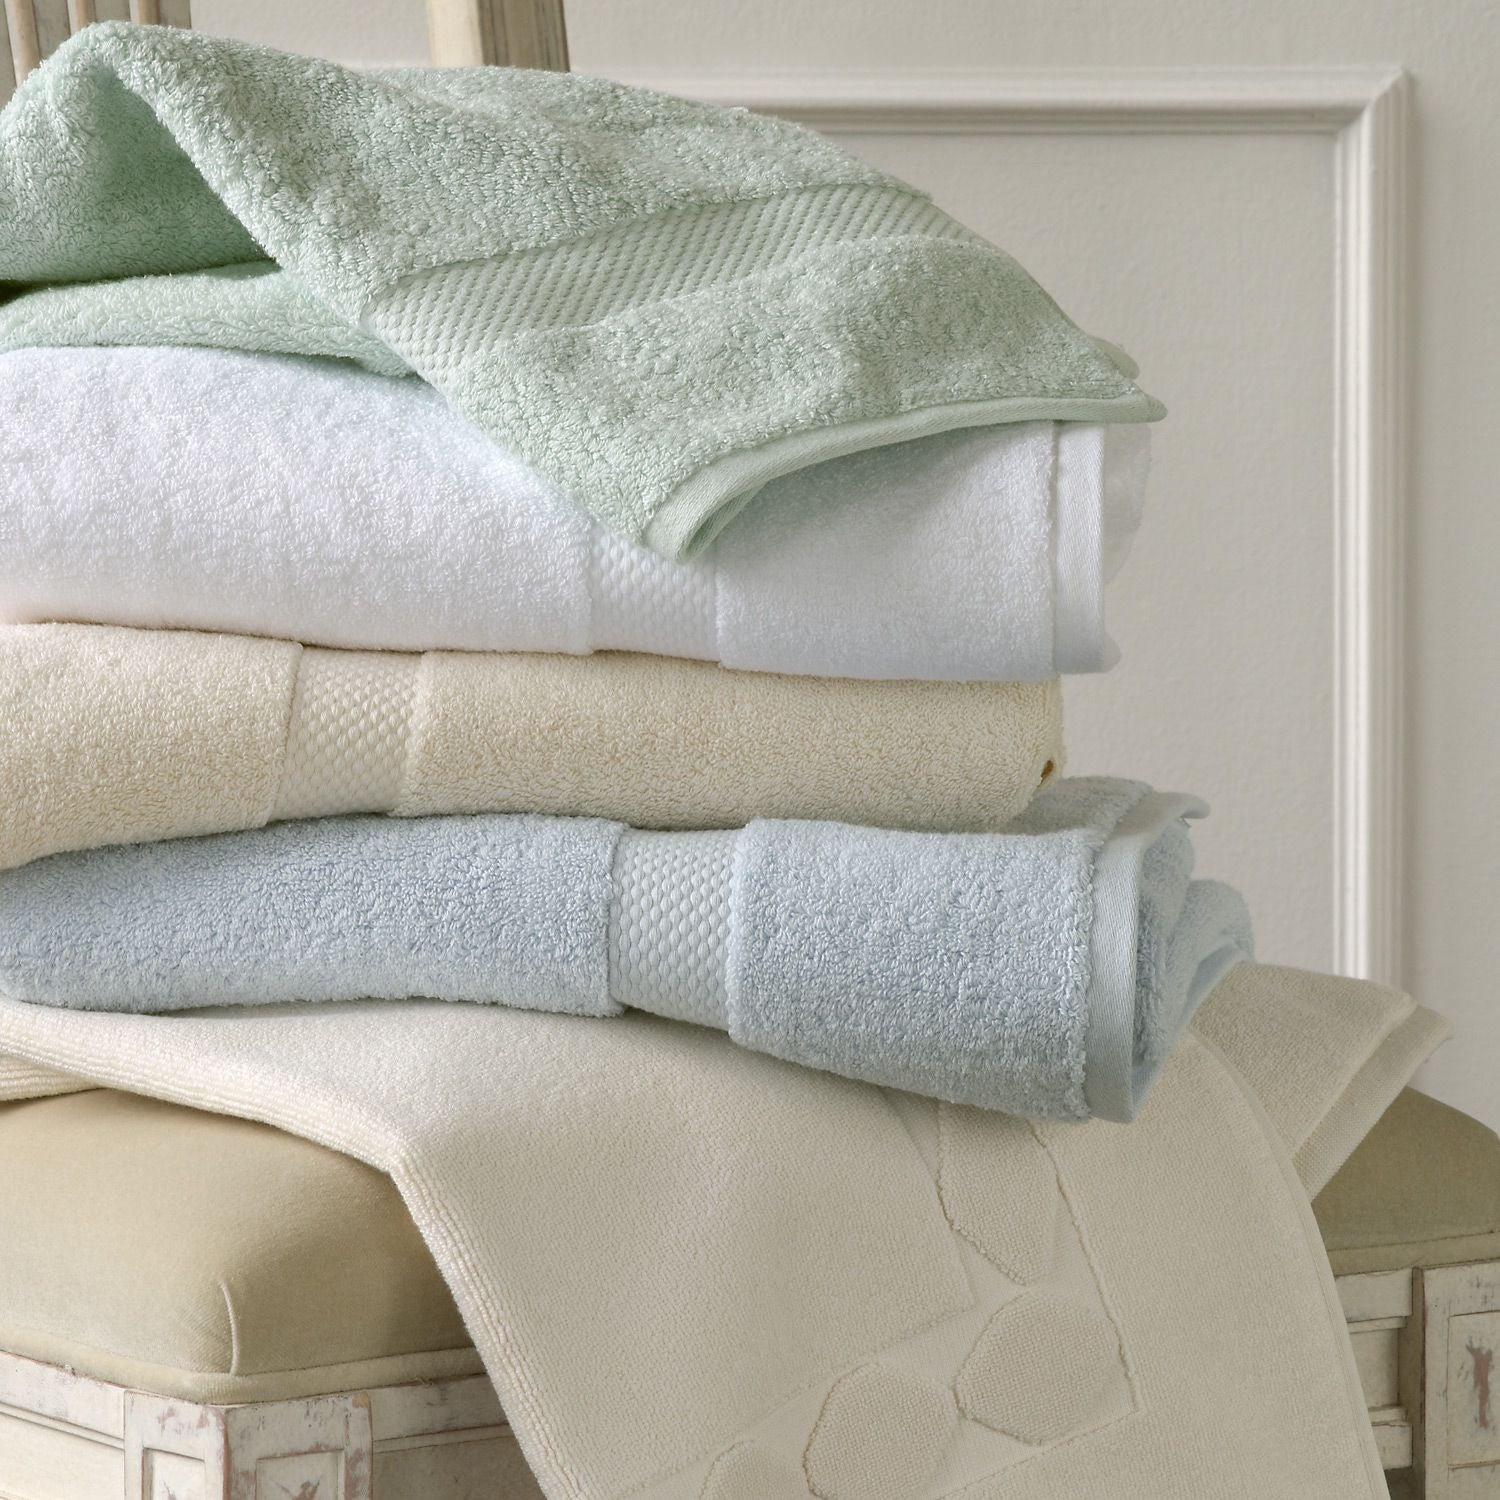 Полотенца и другое. Постельное белье и полотенца. Текстиль для дома. Текстиль полотенца. Пледы полотенца постельное белье.